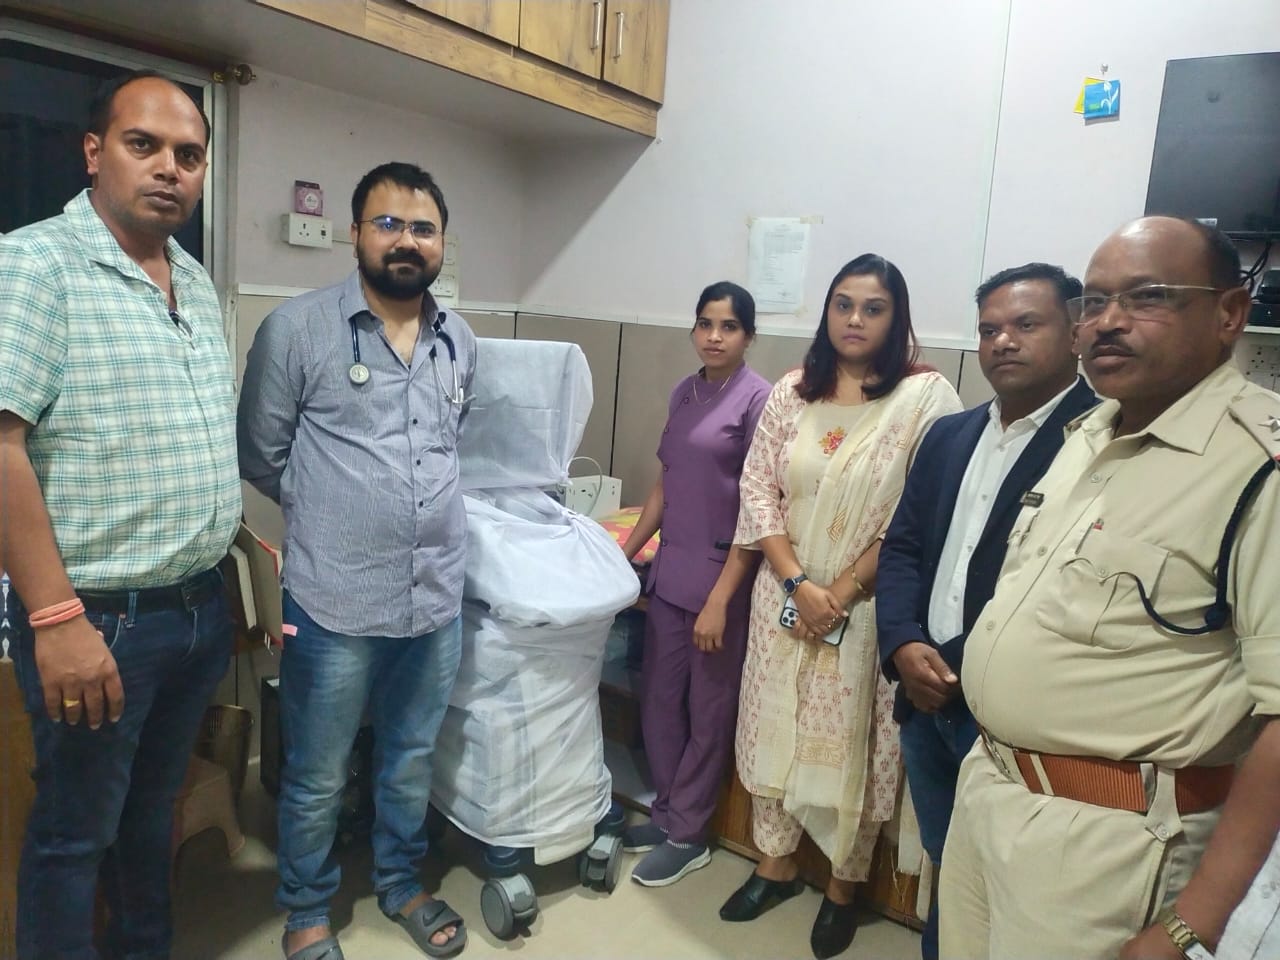 CG News : शर्मा हॉस्पिटल बैकुंठपुर के अल्ट्रा सोनोग्राफी केंद्र को किया गया सील, जानें वजह...